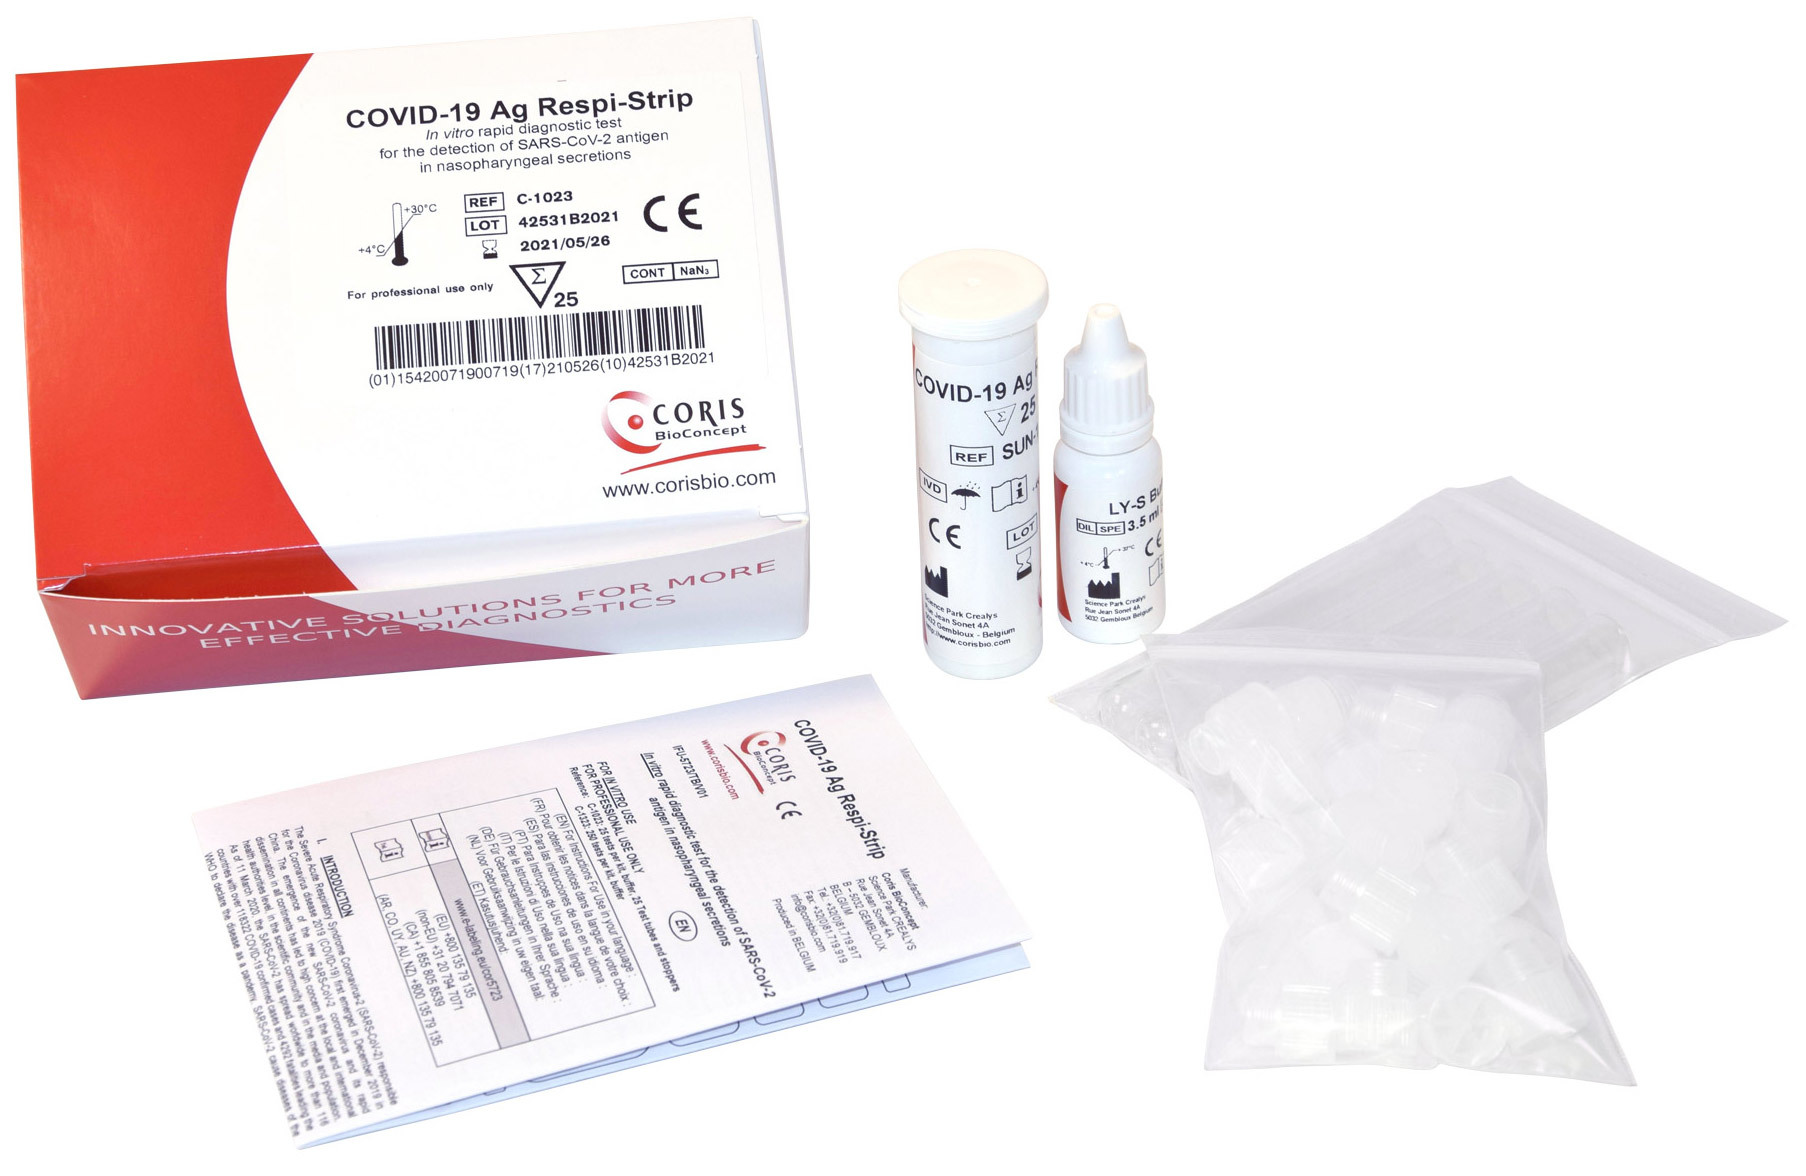 Covid 19 23 19. Набор реагентов для выявления антигена SARS-cov-2 (25 шт.). Экспресс-тест на Covid-19 antigen Rapid Test Kit. Набор реагентов ковид 19 антиген Рапид. Набор для экспресс-теста на антиген SARS-cov-2 antigen Rapid Test Kit (ПЦР).